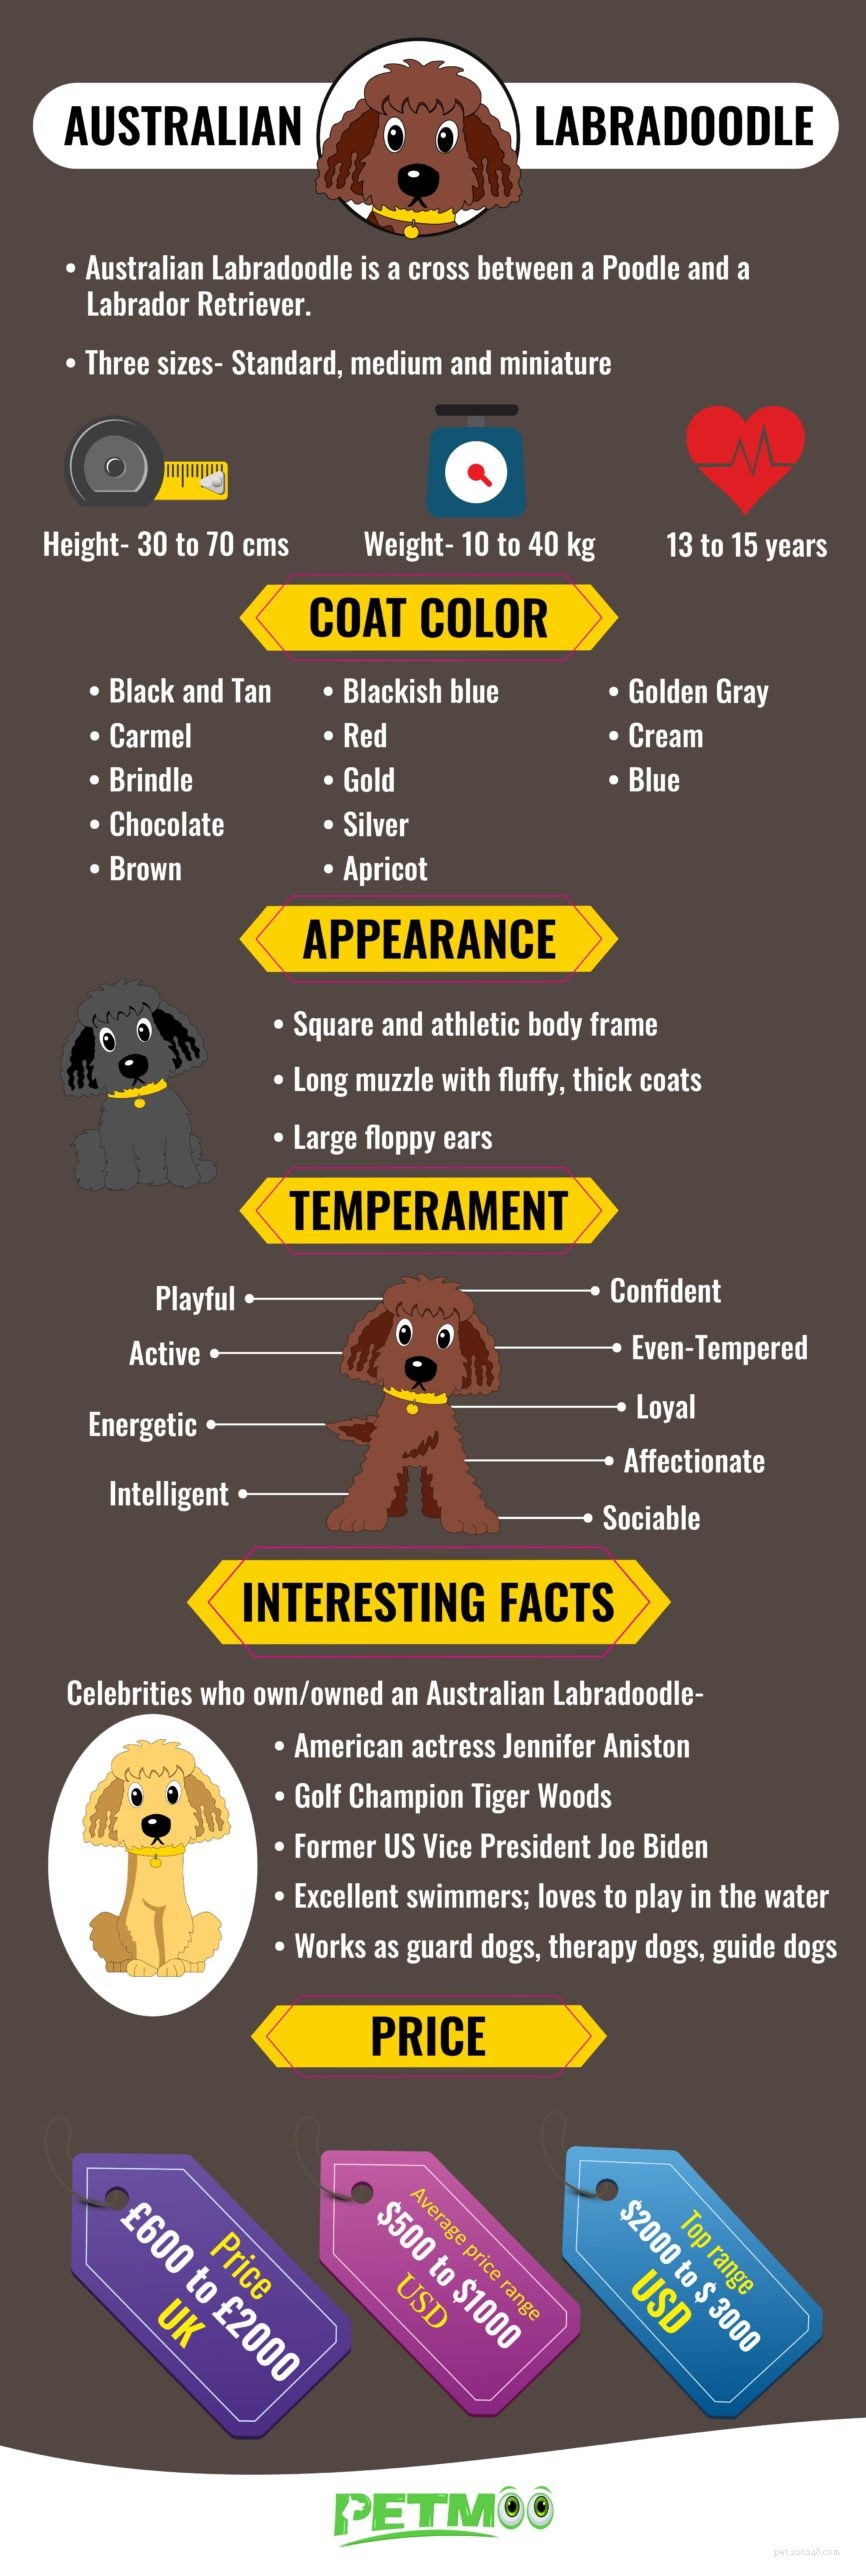 Австралийский лабрадудель – информация и история породы собак